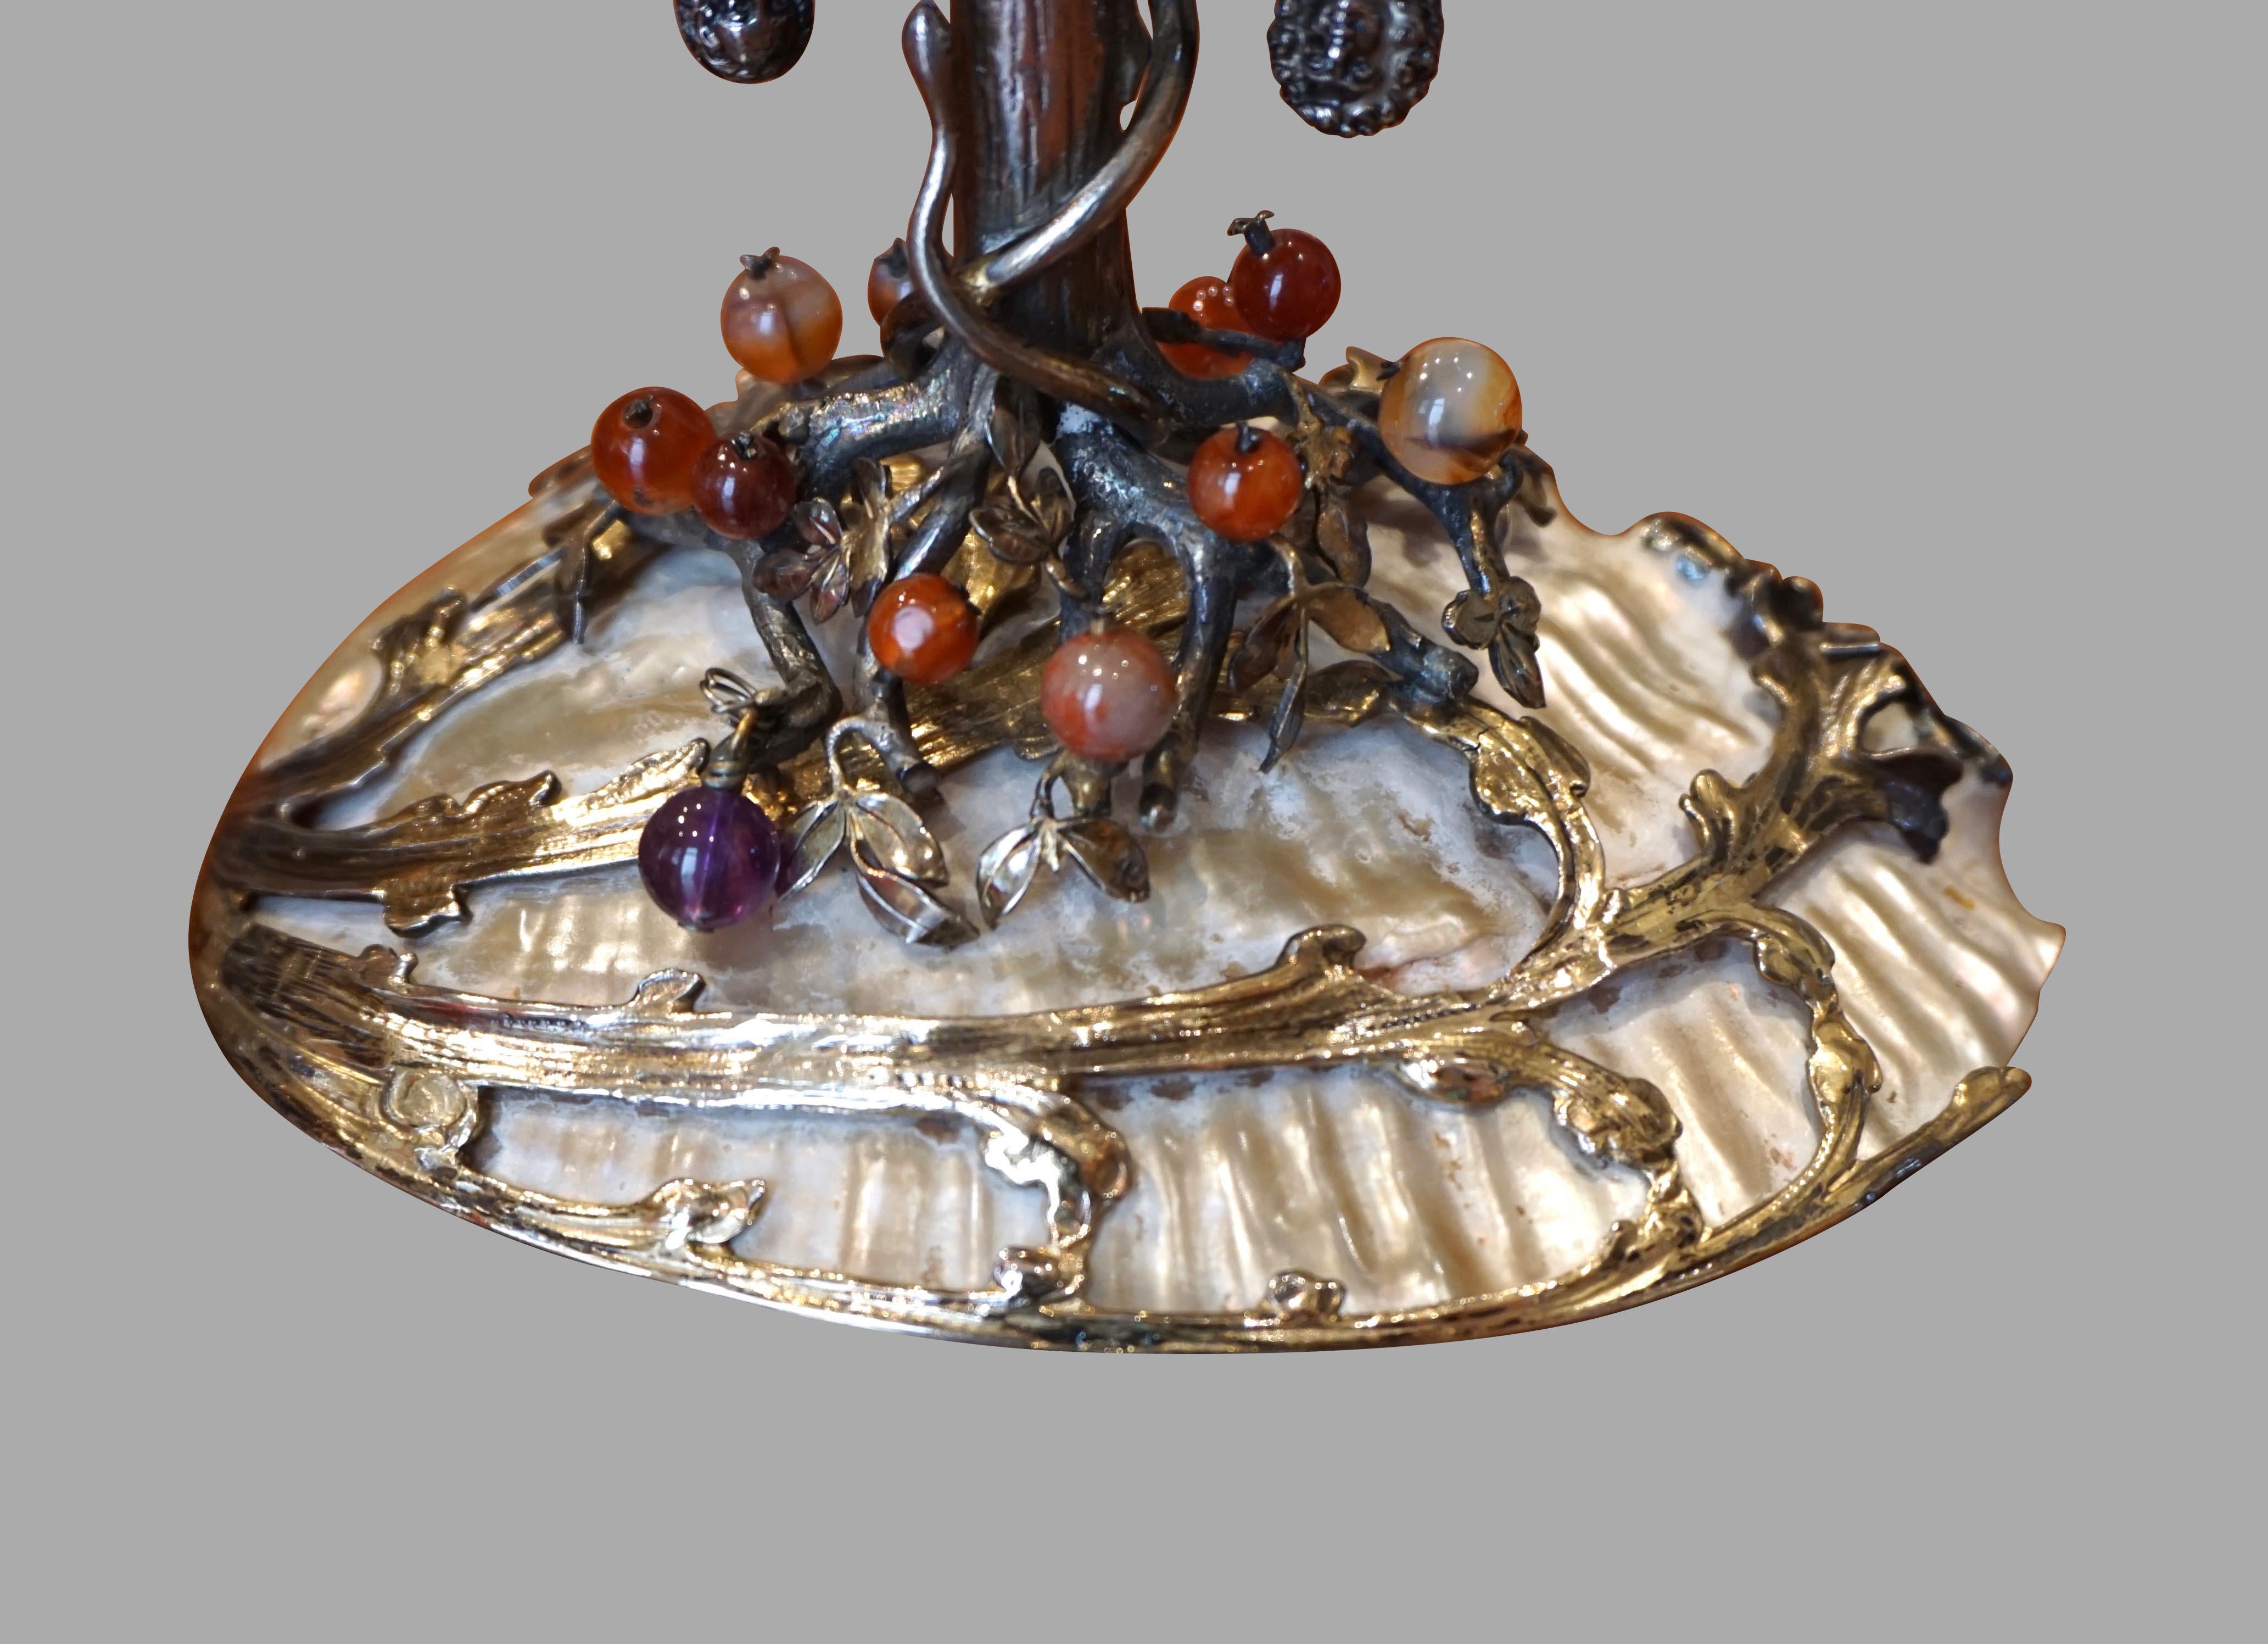 19th Century German Silver and Semi-Precious Stone Baroque Style Adam and Eve Theme Tazza